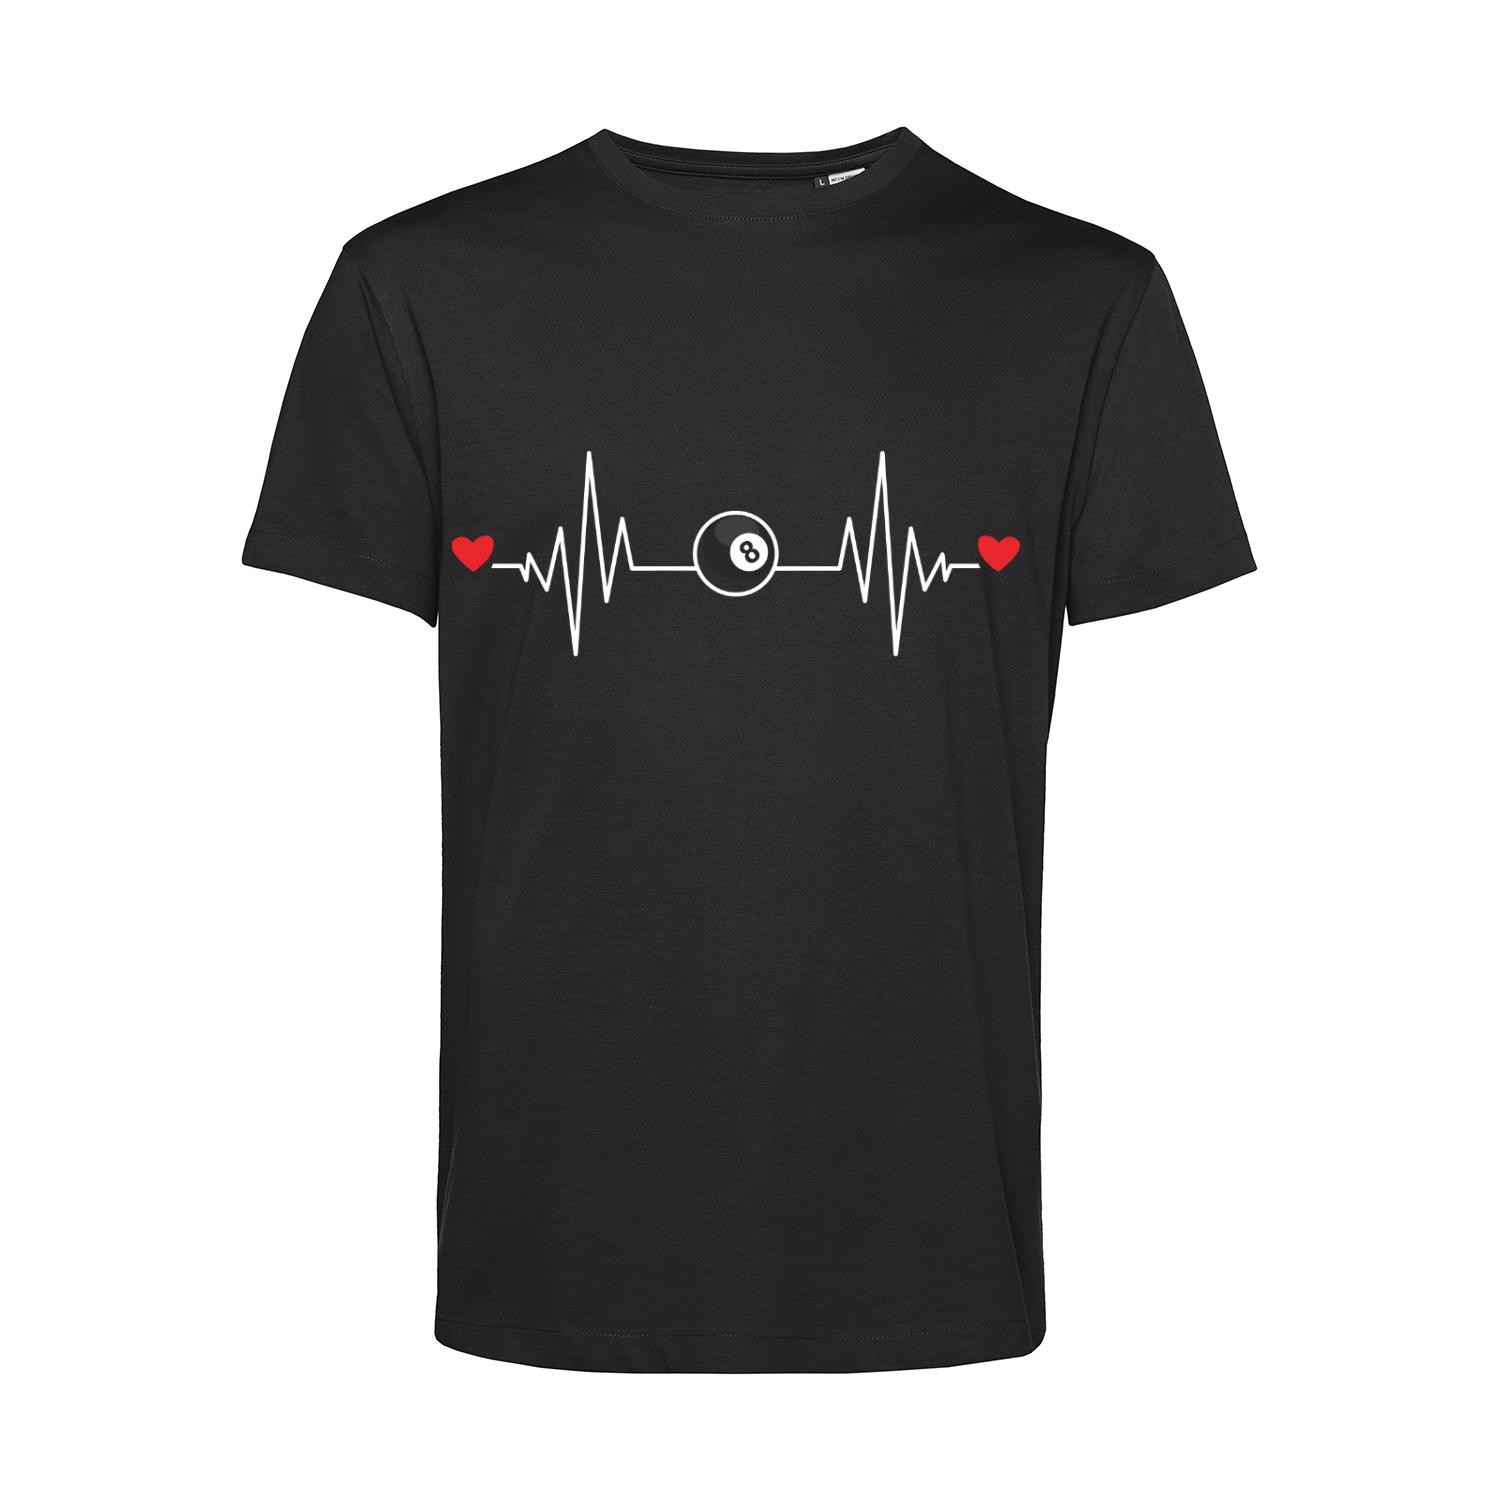 Nachhaltiges T-Shirt Herren Billard - Herzstromkurve